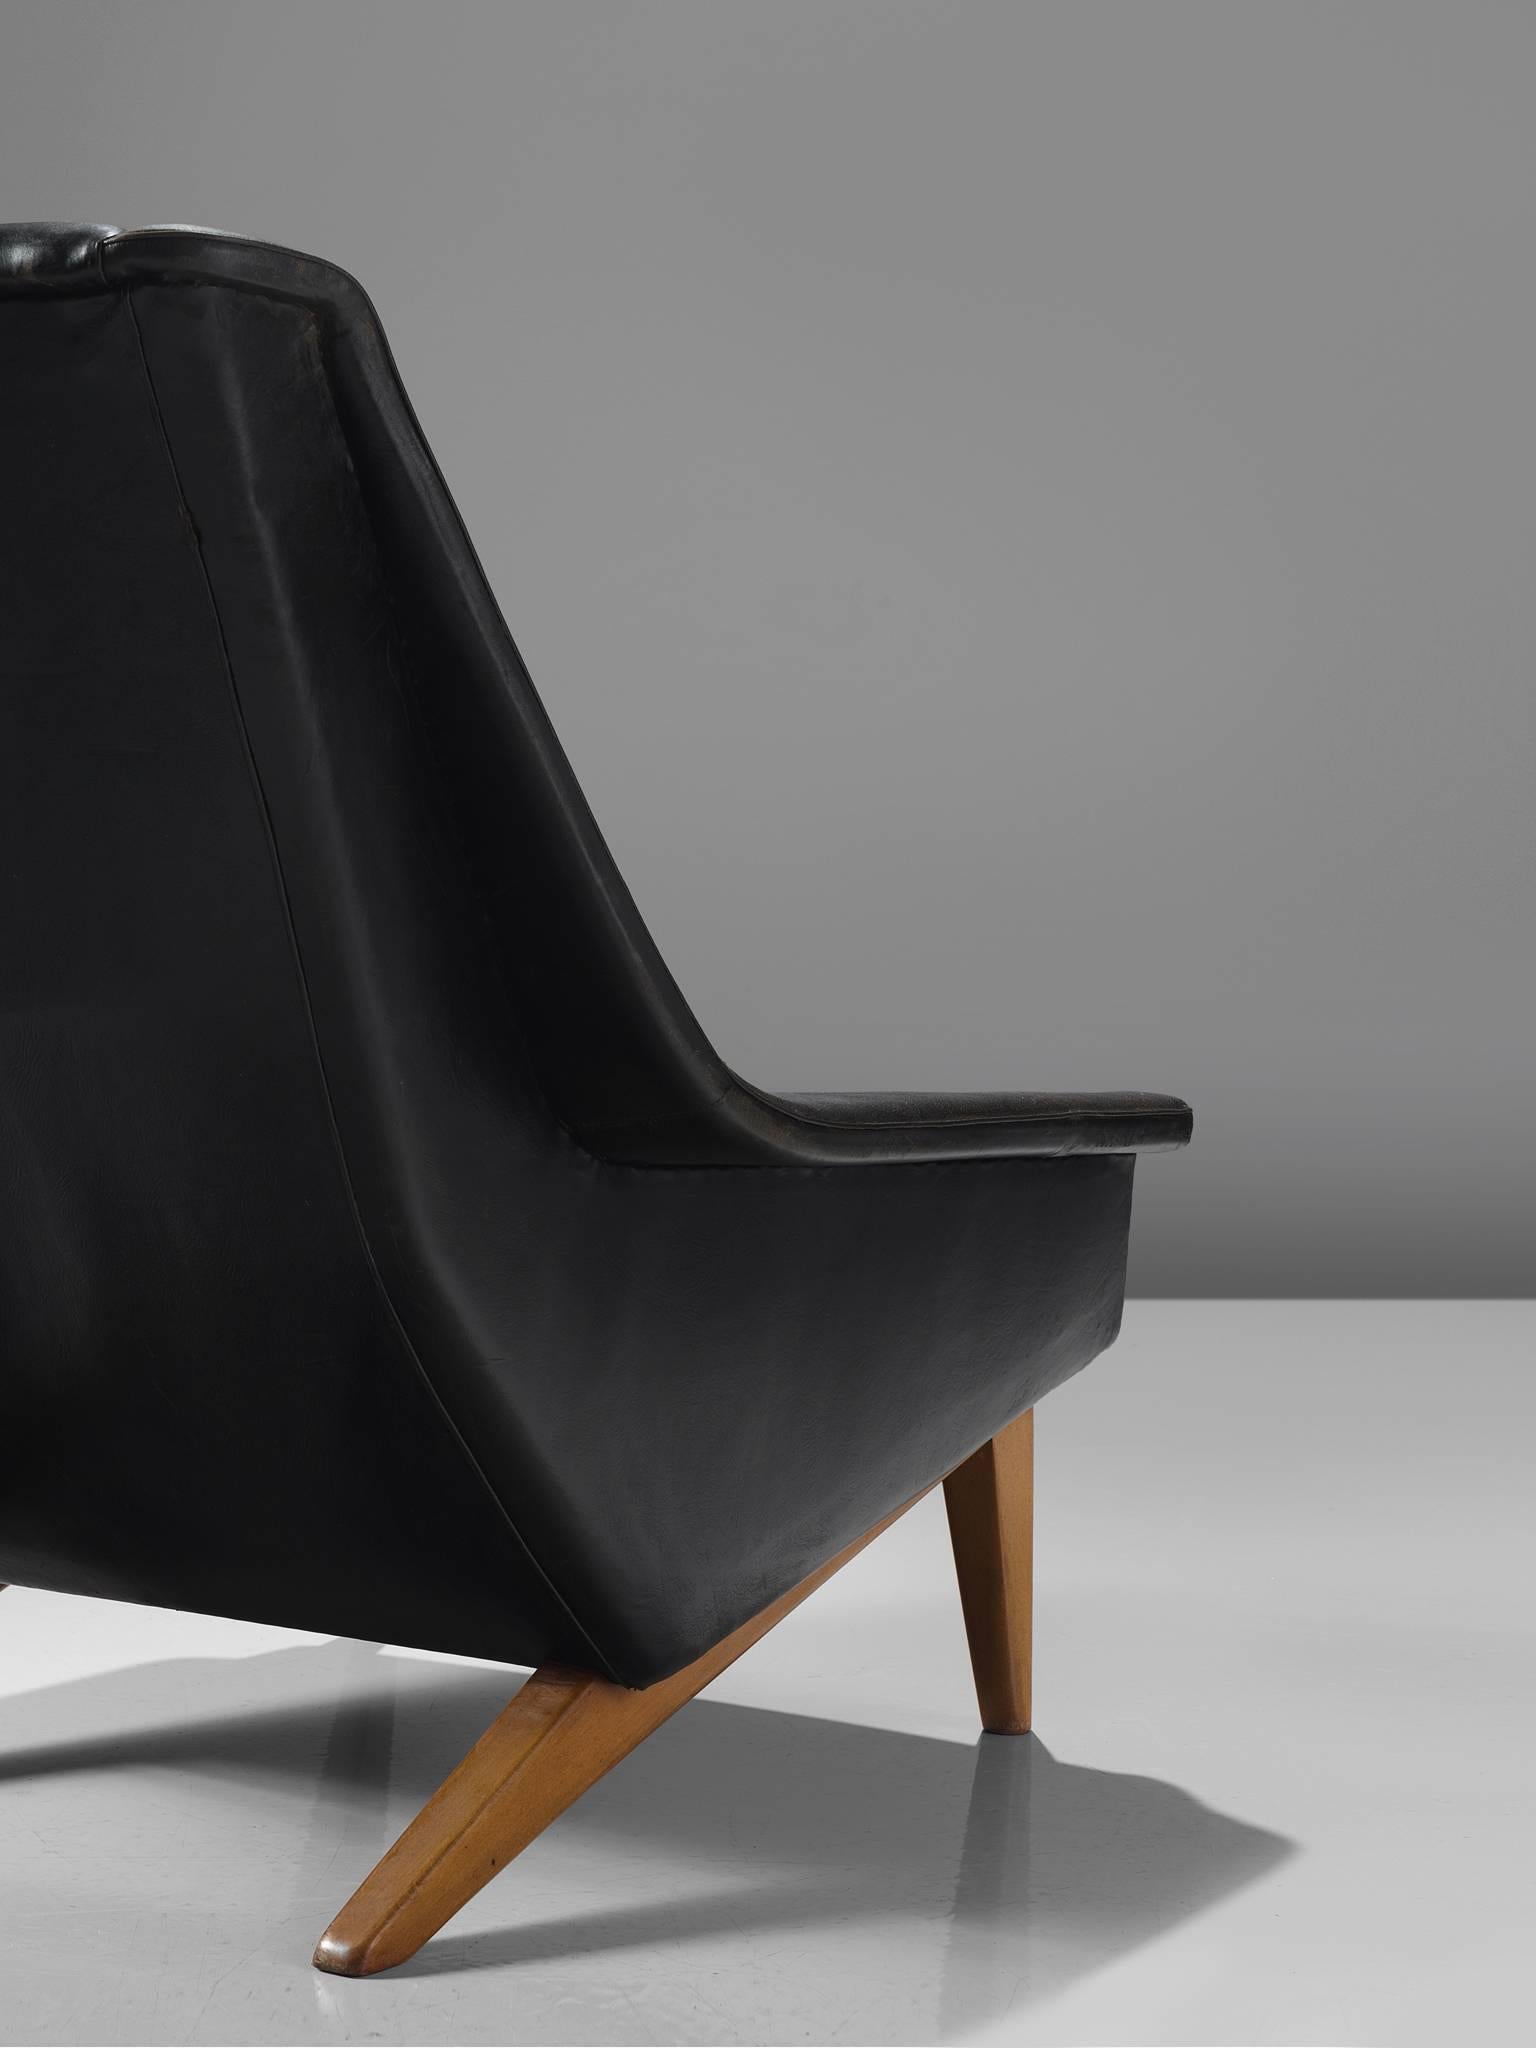 Danish Folke Ohlsson Original Black Leather Lounge Chair for Fritz Hansen